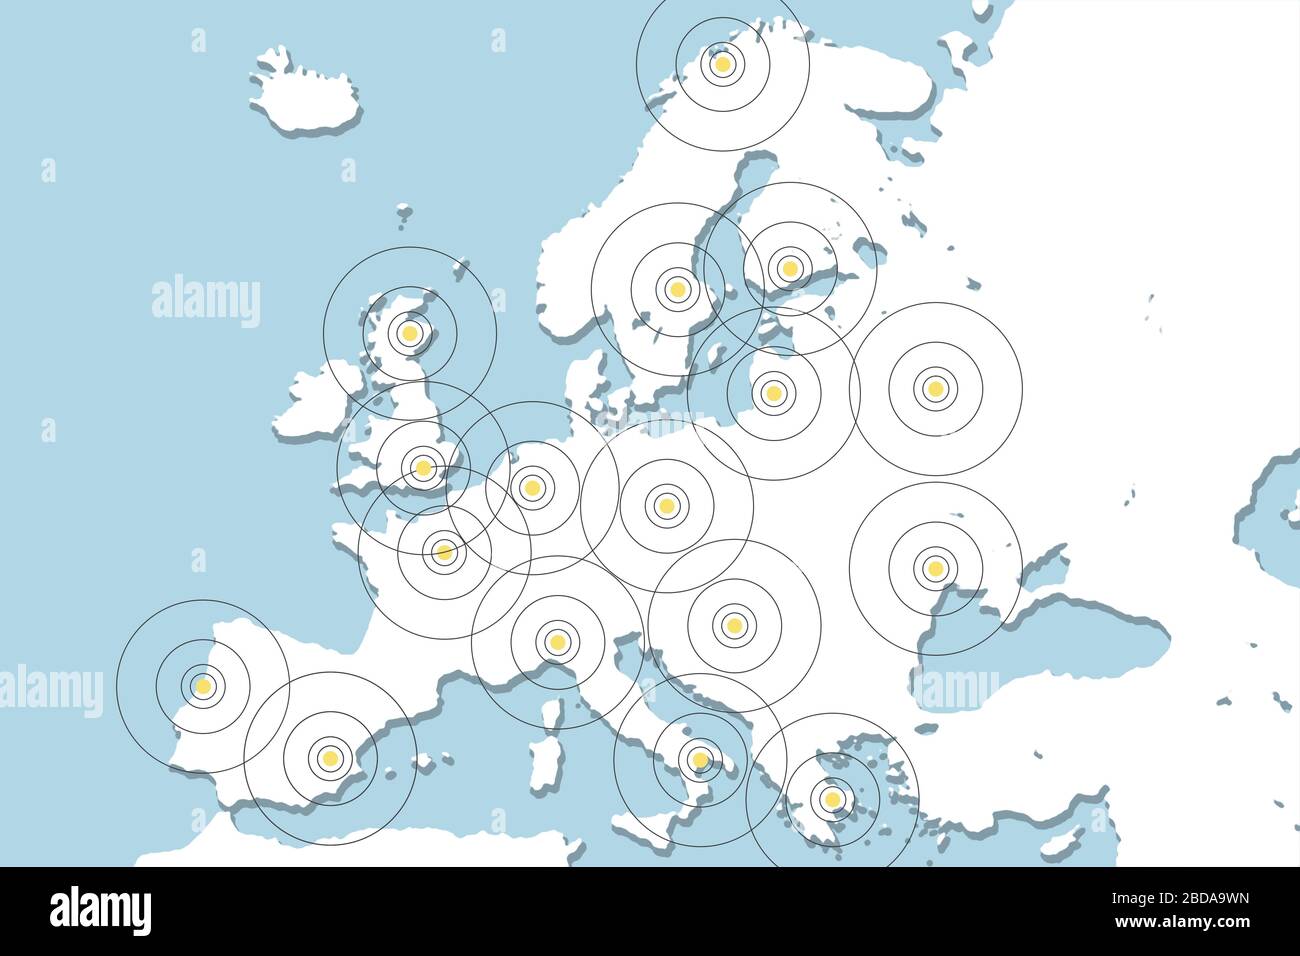 Verfolgung Von Mobiltelefonen. Abbildung mit Europakarte und Mobiltelefonen. Stockfoto